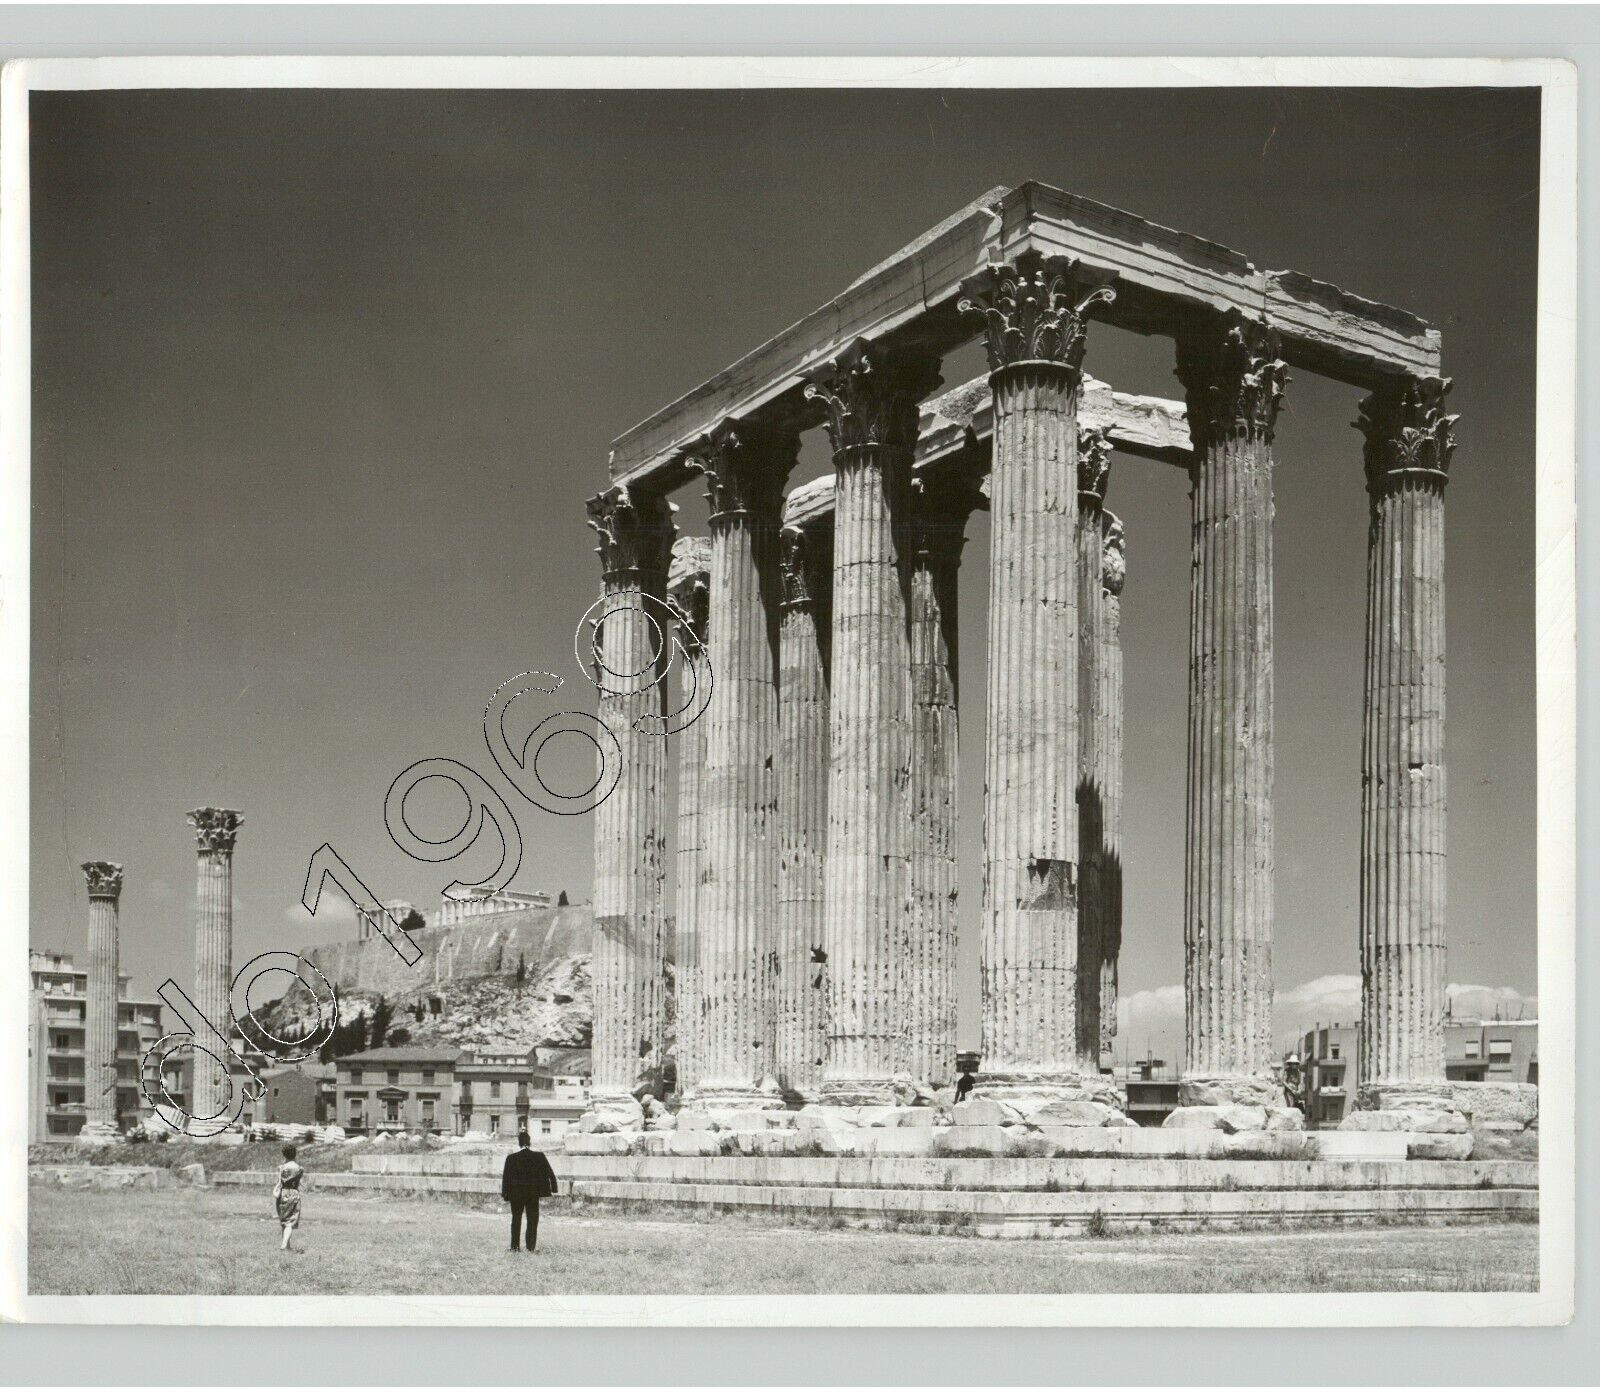 VTG ARCHITECTURE Parthenon, GREEK RINUS, Athens 1960s. Dick Kent Press Photo